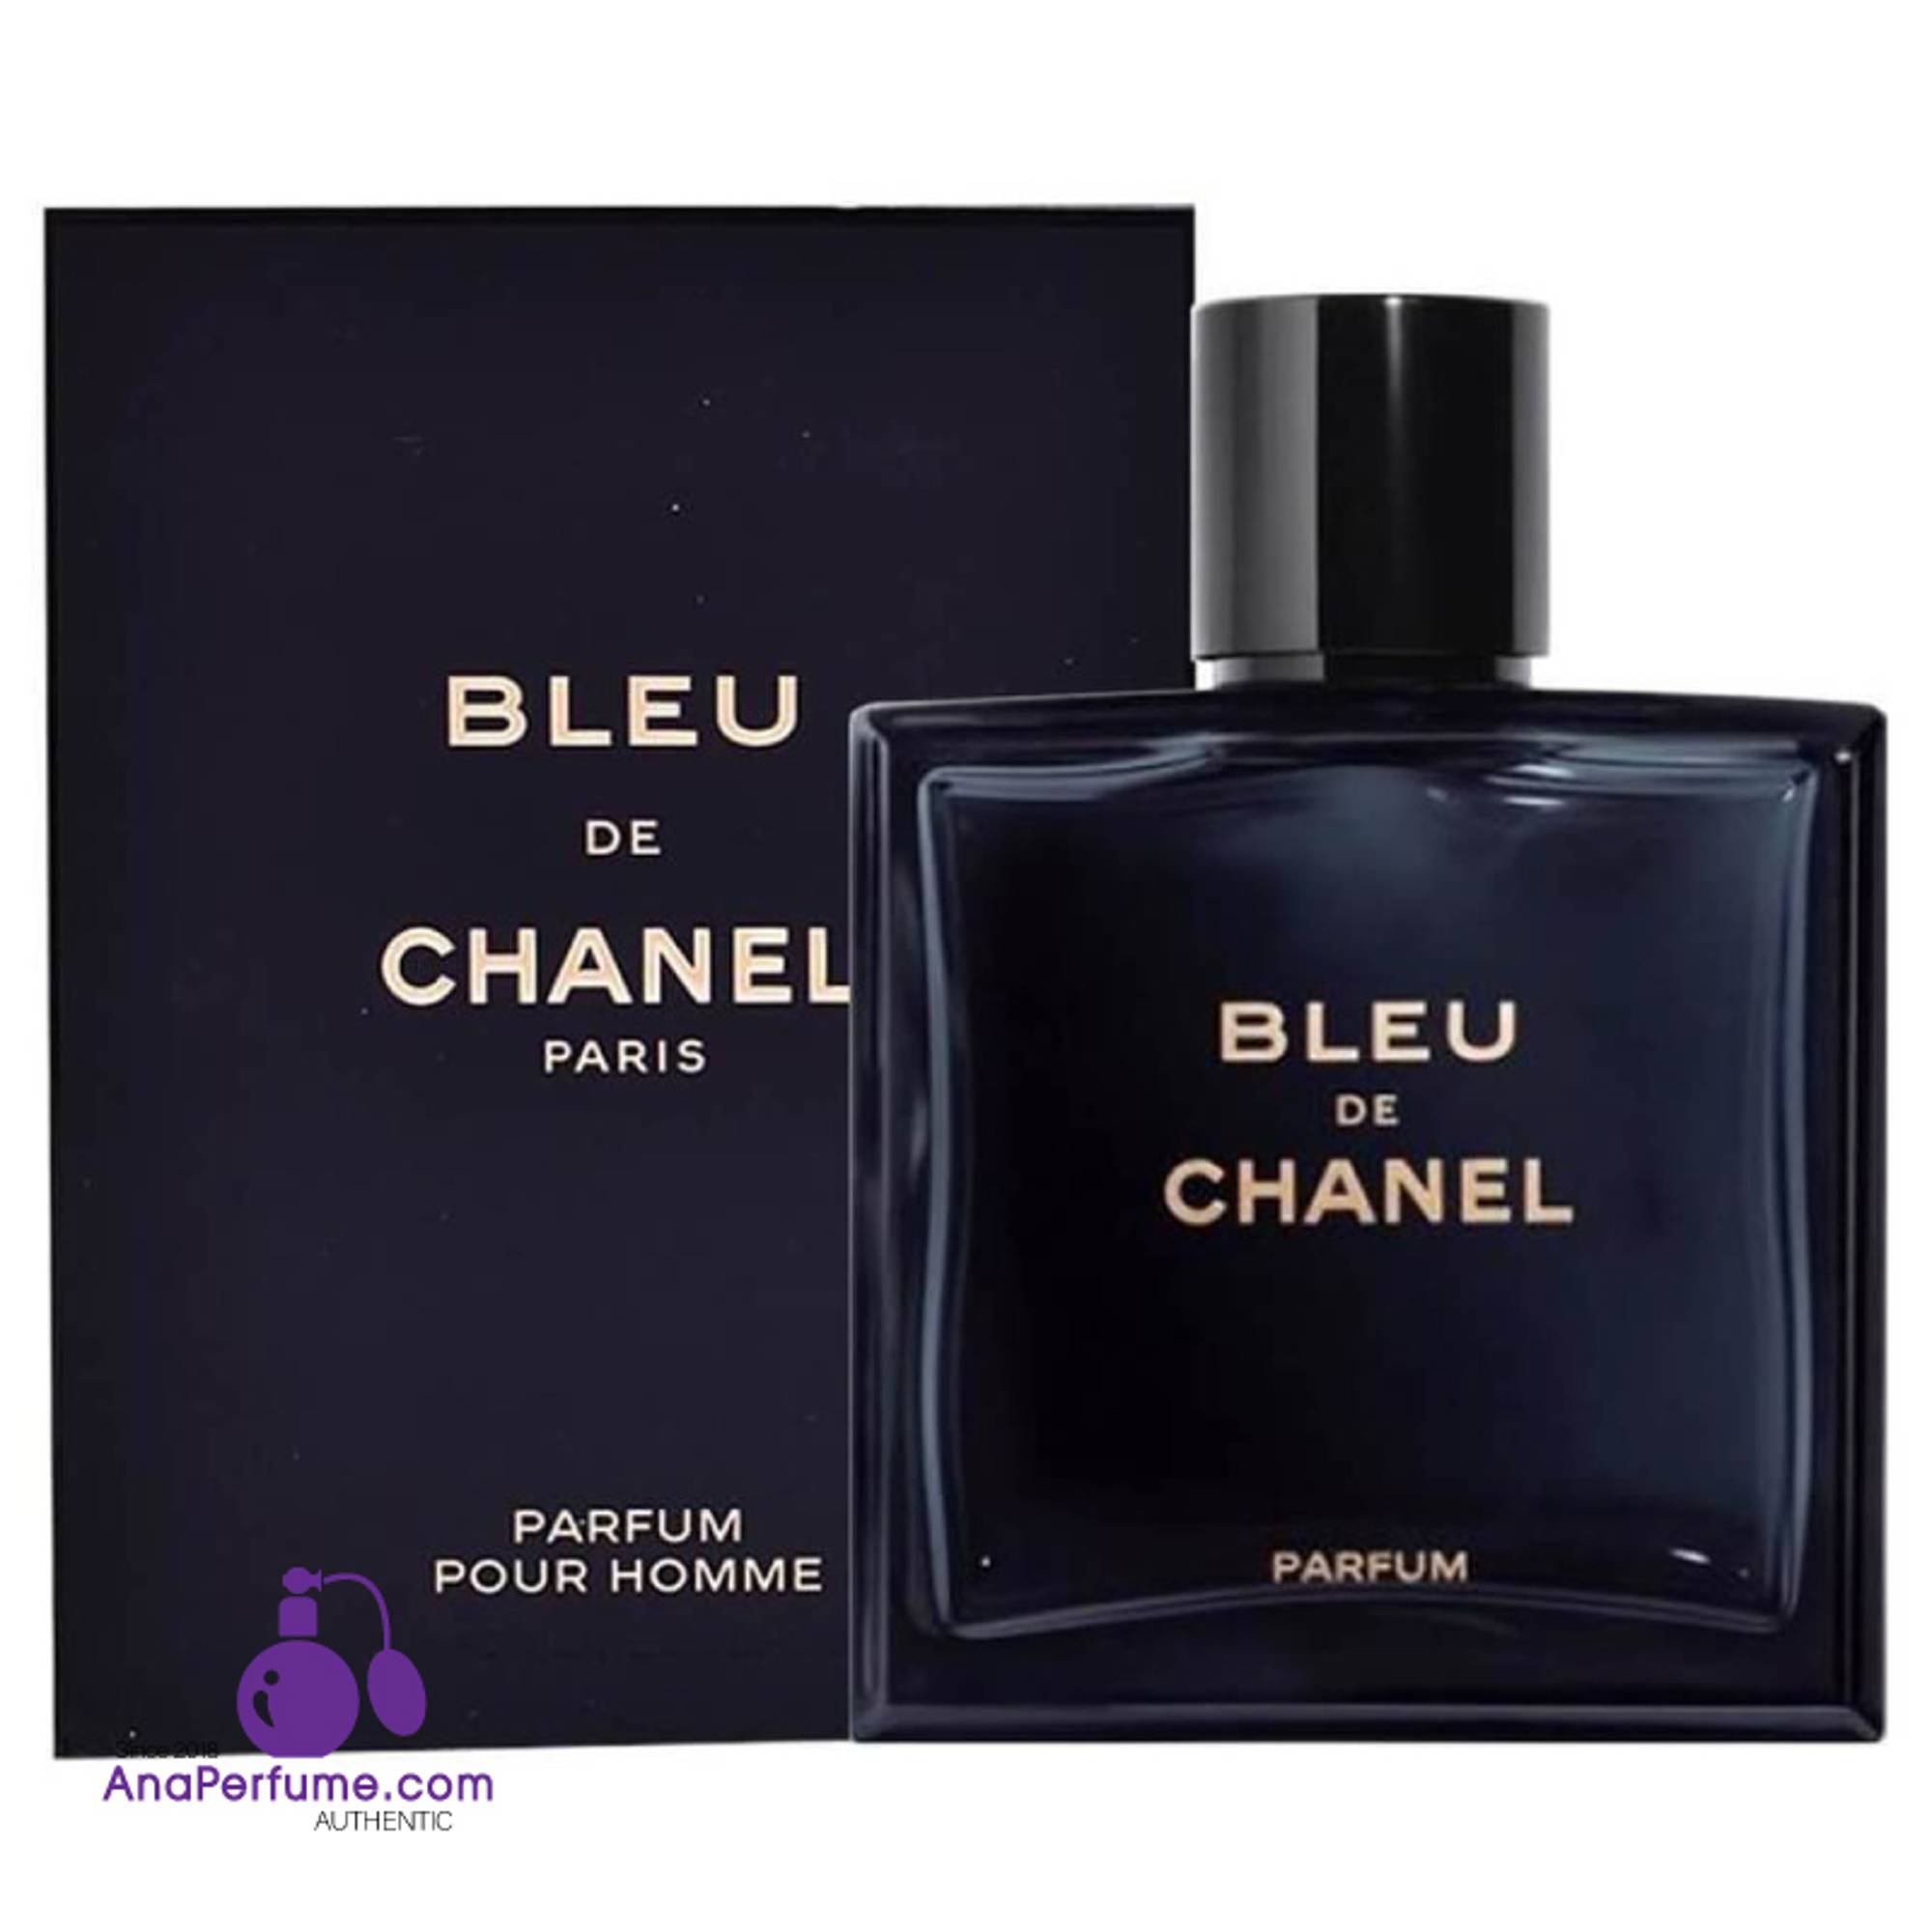 Amazoncom  Chanel Bleu De Chanel Paris Eau de Toilette Spray for Men 17  Fluid Ounce  Beauty  Personal Care